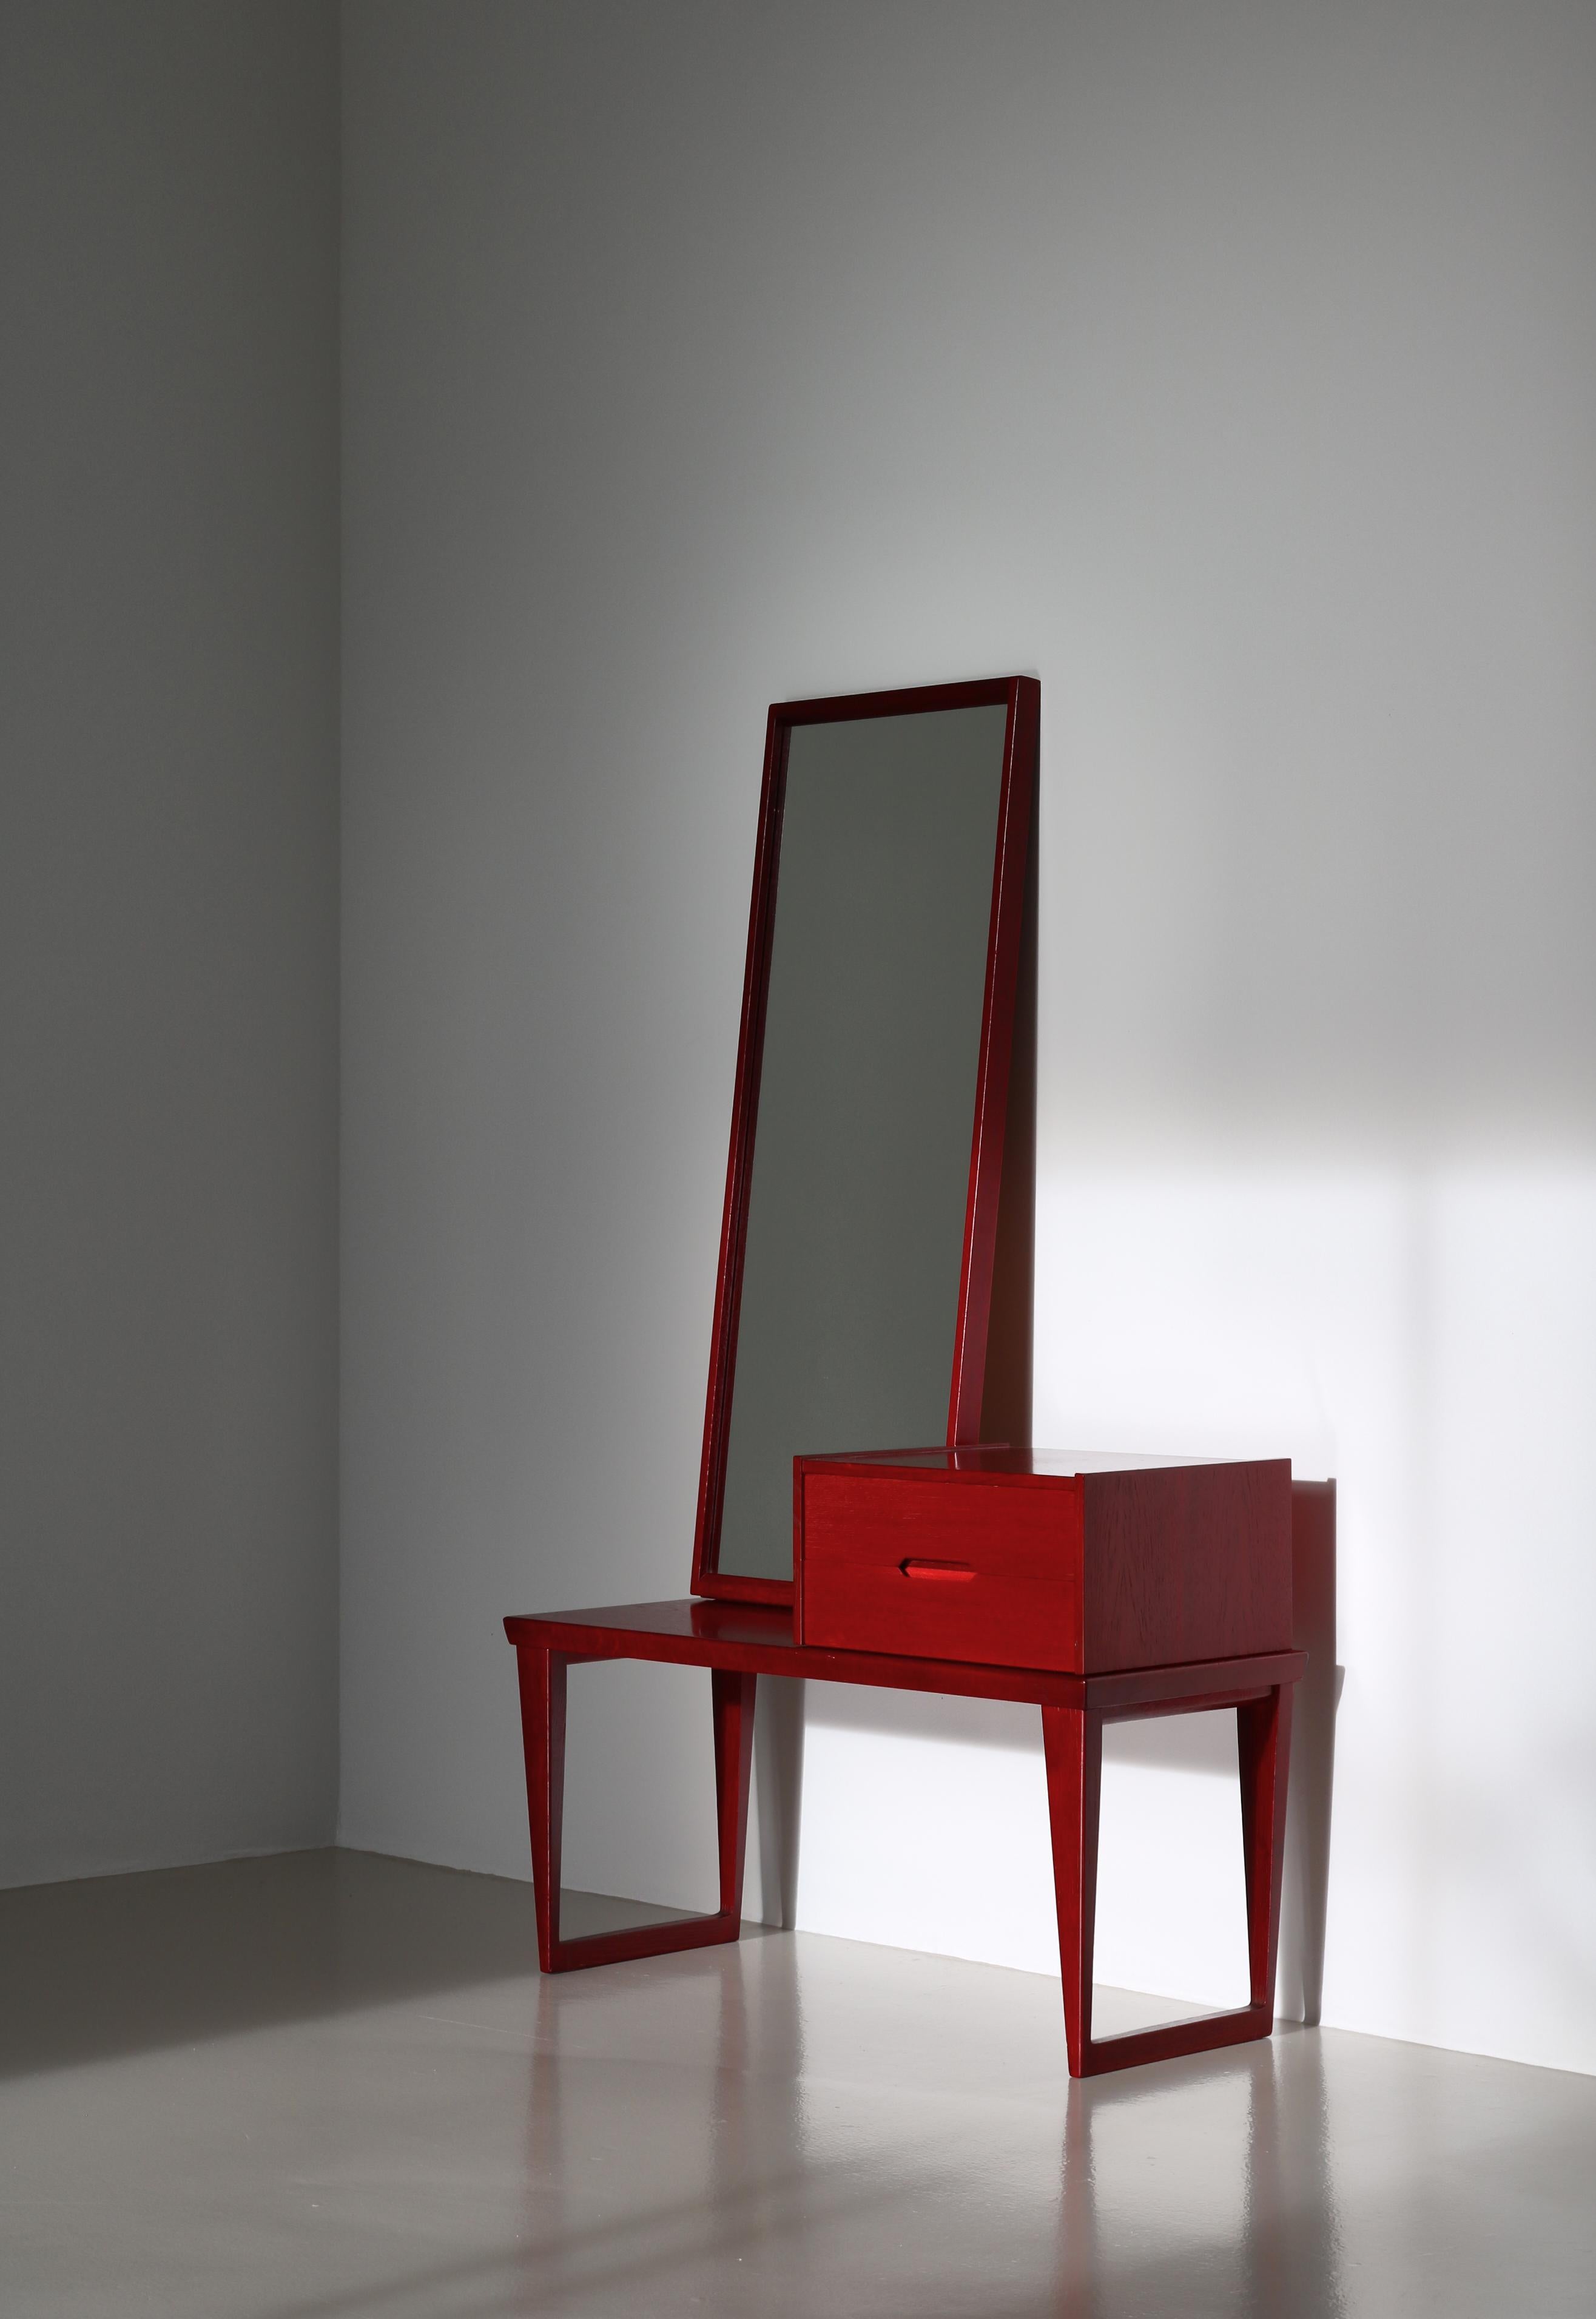 Rare ensemble d'entrée moderne danois composé d'un banc, d'un miroir et d'une petite commode, tous conçus par Kai Kristiansen dans les années 1960... Cet exemplaire est en chêne teinté rouge et est très rare. Il a été fabriqué en petites quantités